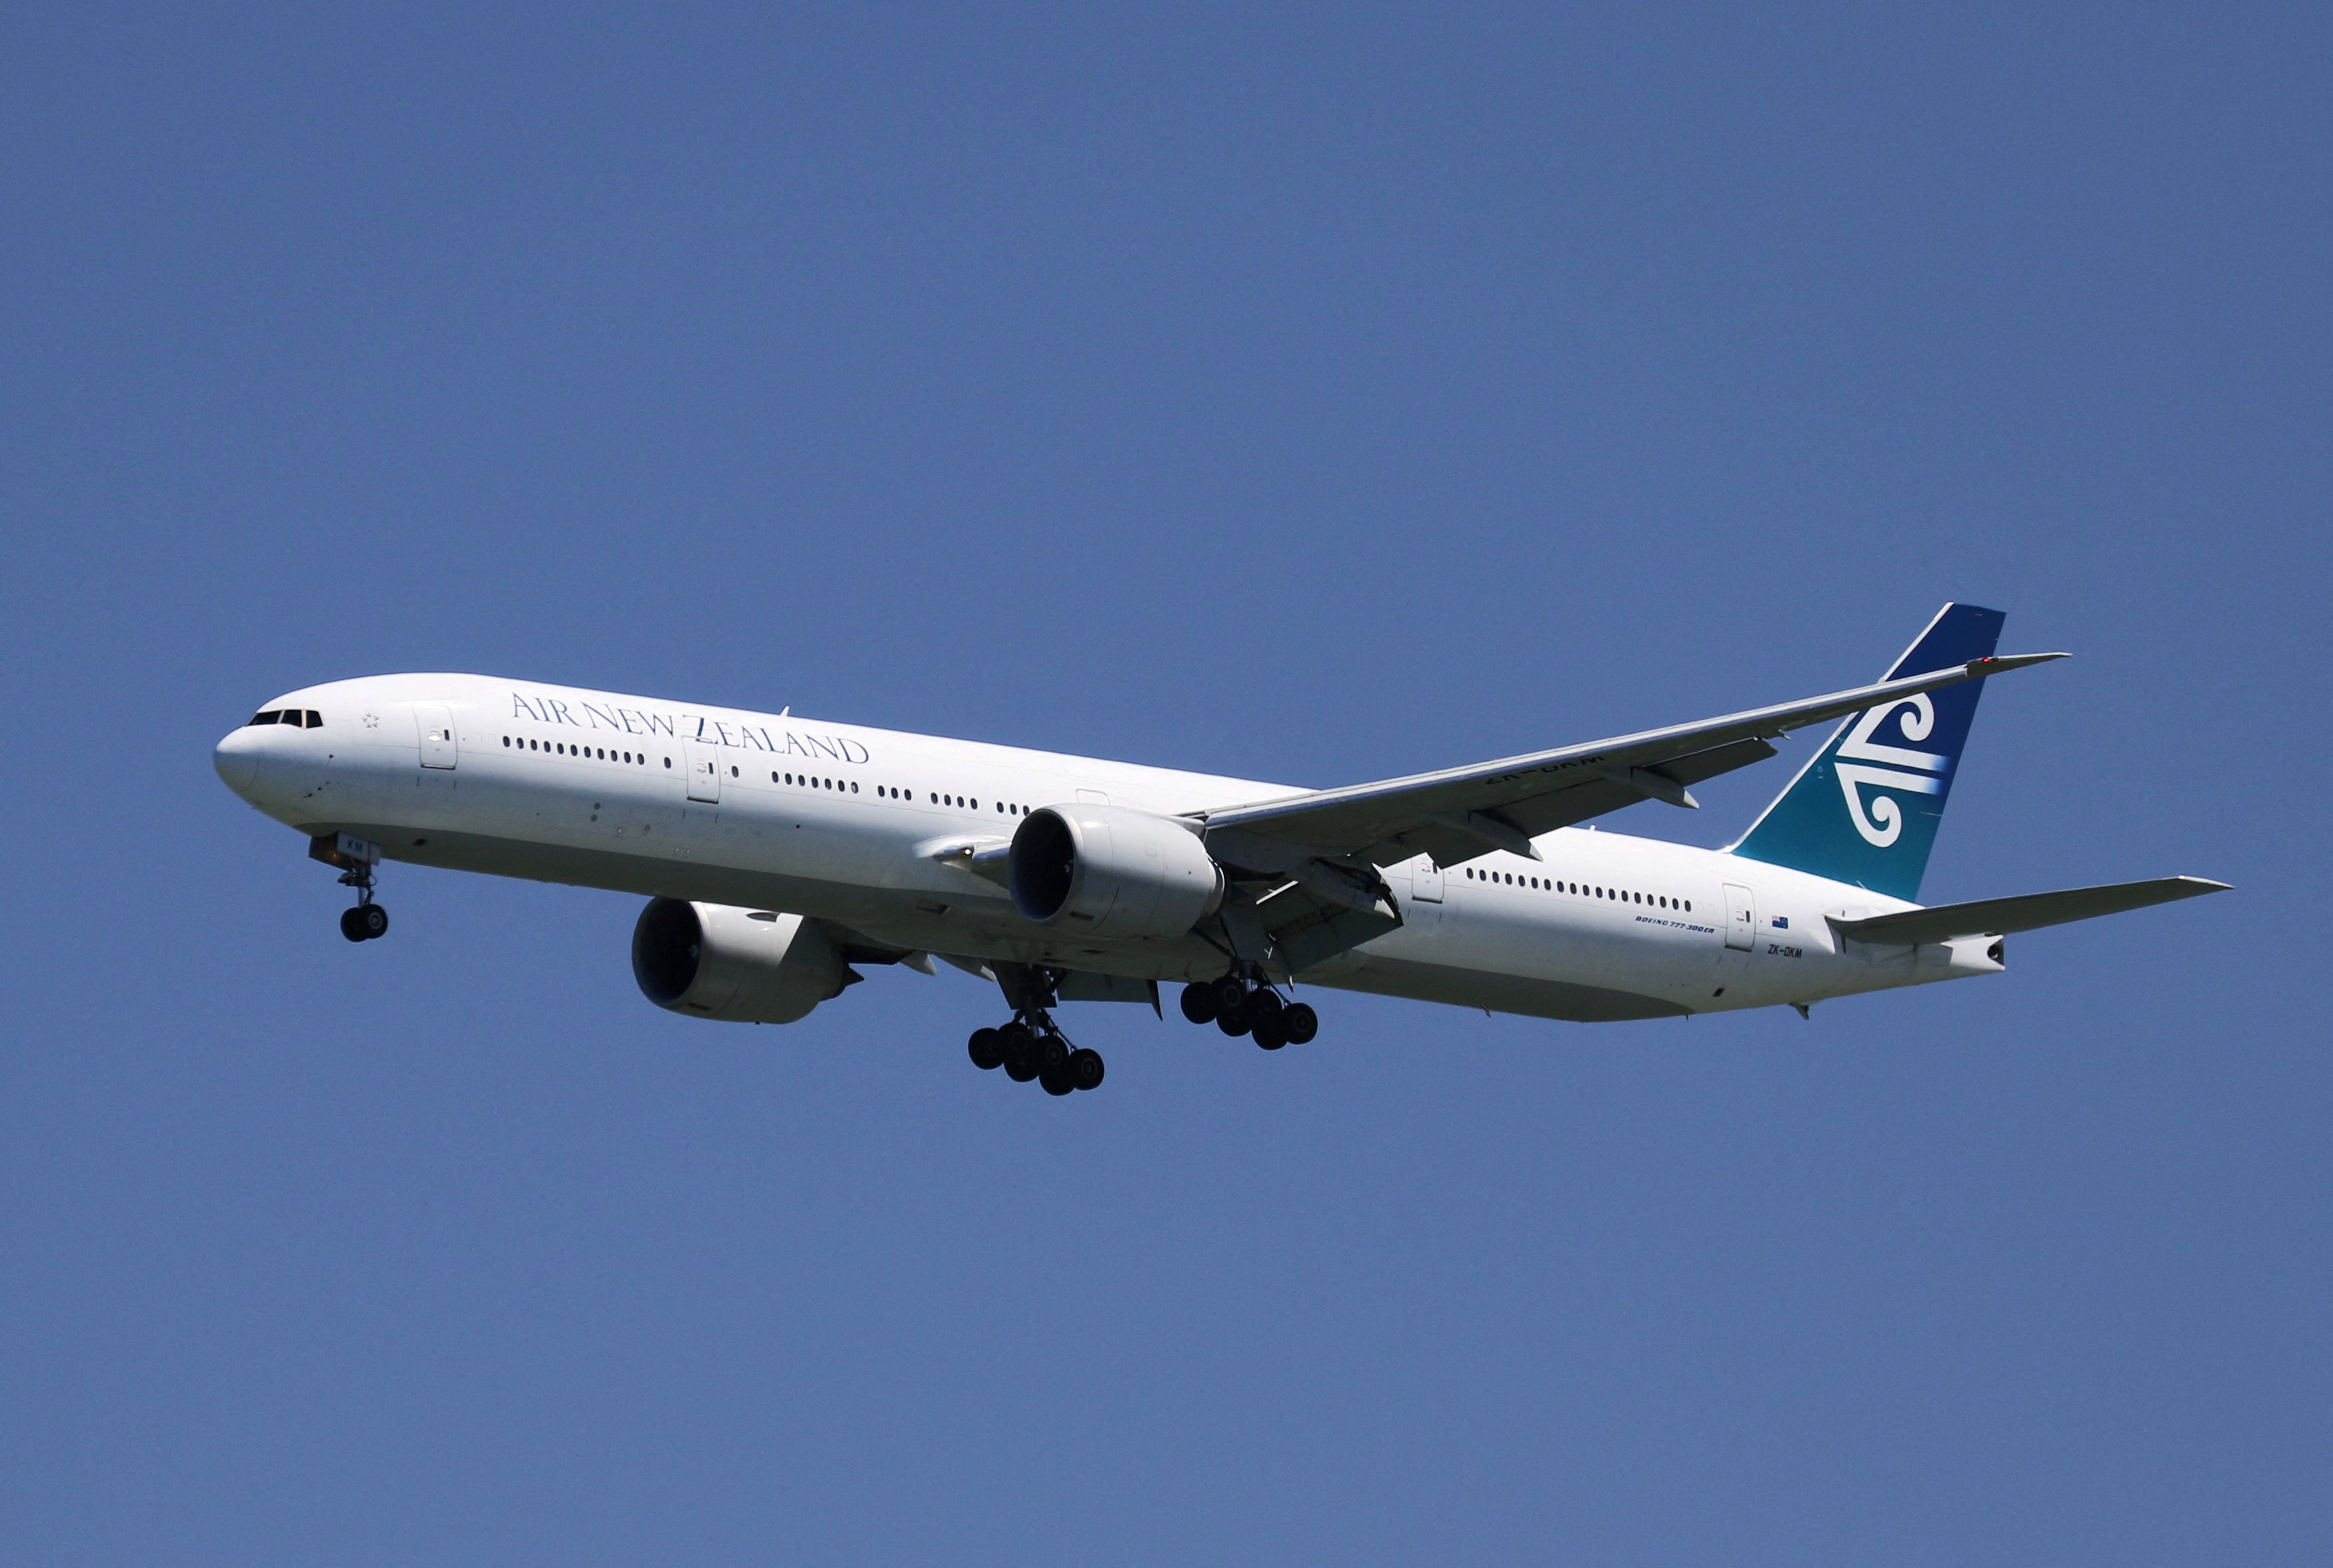 Un Boeing 777-300ER de Air New Zealand, con número de cola ZK-DKM, aterriza en el Aeropuerto Internacional de San Francisco, San Francisco, California, 16 de abril de 2015. REUTERS/Louis Nastro/Archivo